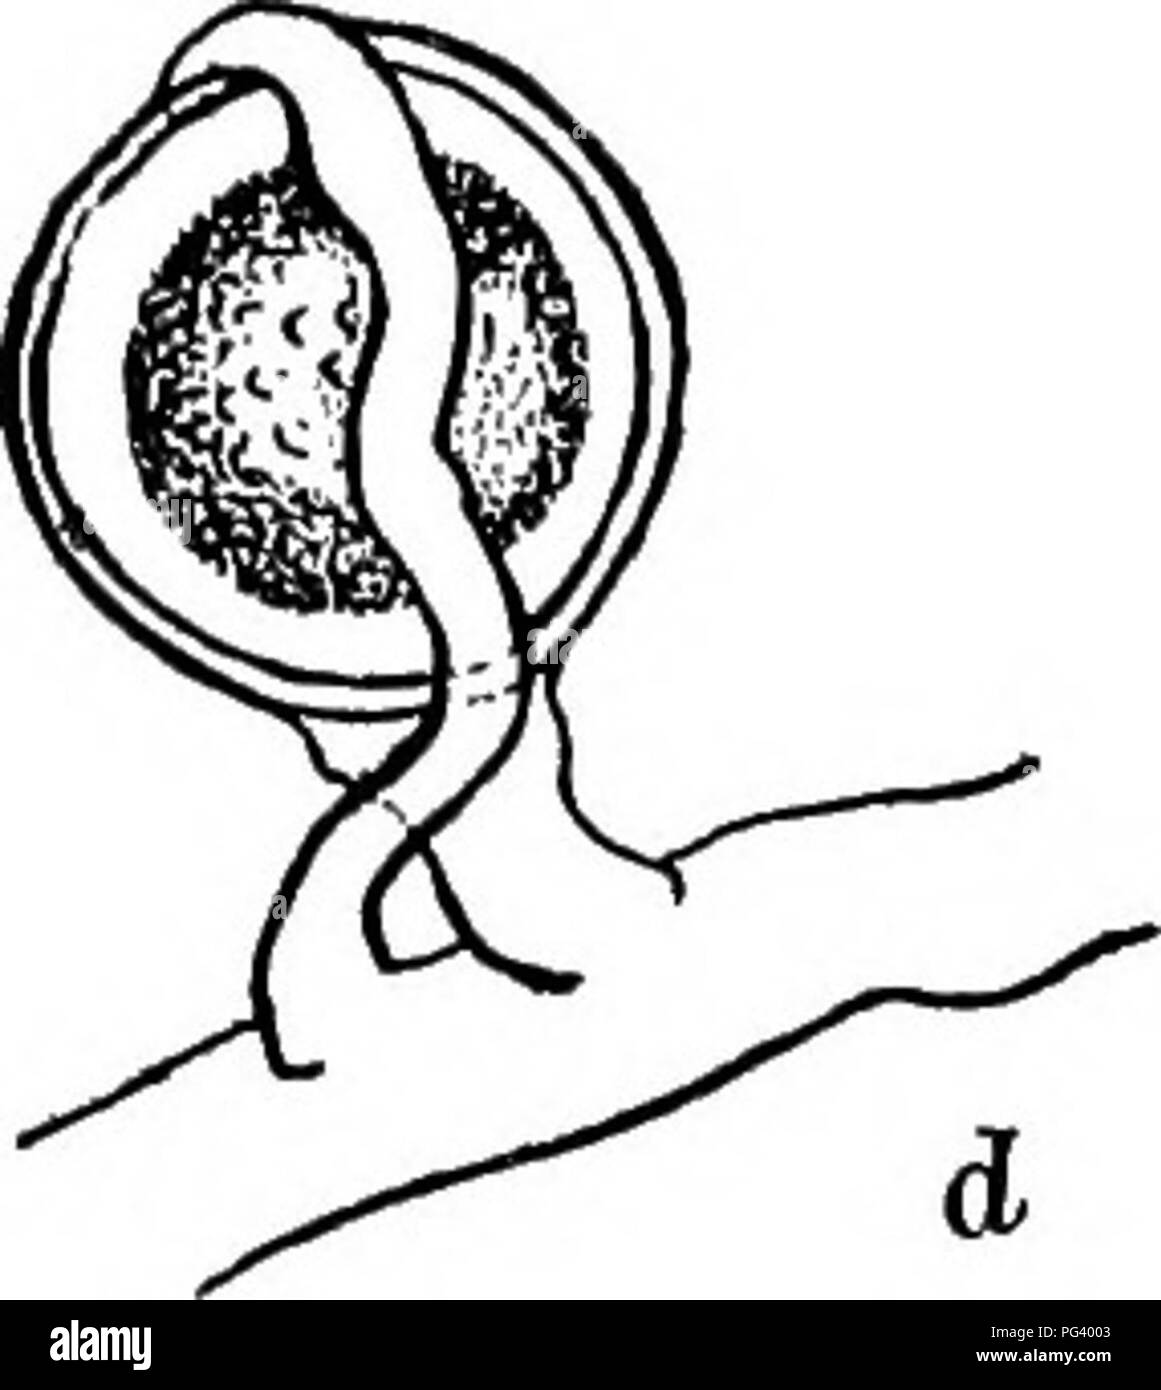 . Fungous les maladies des plantes : avec des chapitres sur la physiologie, les méthodes de culture et de technique . Les champignons dans l'agriculture. Fig. 53. Plasmopara sur raisin, [b et d après un mycélium, Farlow) ; b, mature ; conidiophore c et d, zoospore et la formation des oospores, respectivement de deux tiers de culture (voir illustration page 1). Sur litis cordifolia le champignon peut fruit donc abondamment sur les jeunes baies à totalement envelopper dans une masse de downy les sporophores. Dans de telles circonstances, le Berry n'a pas à ce stade montrer les preuves de la pourriture, et c'est seulement lorsque les baies sont plus âgés, et dans d'autres spec Banque D'Images